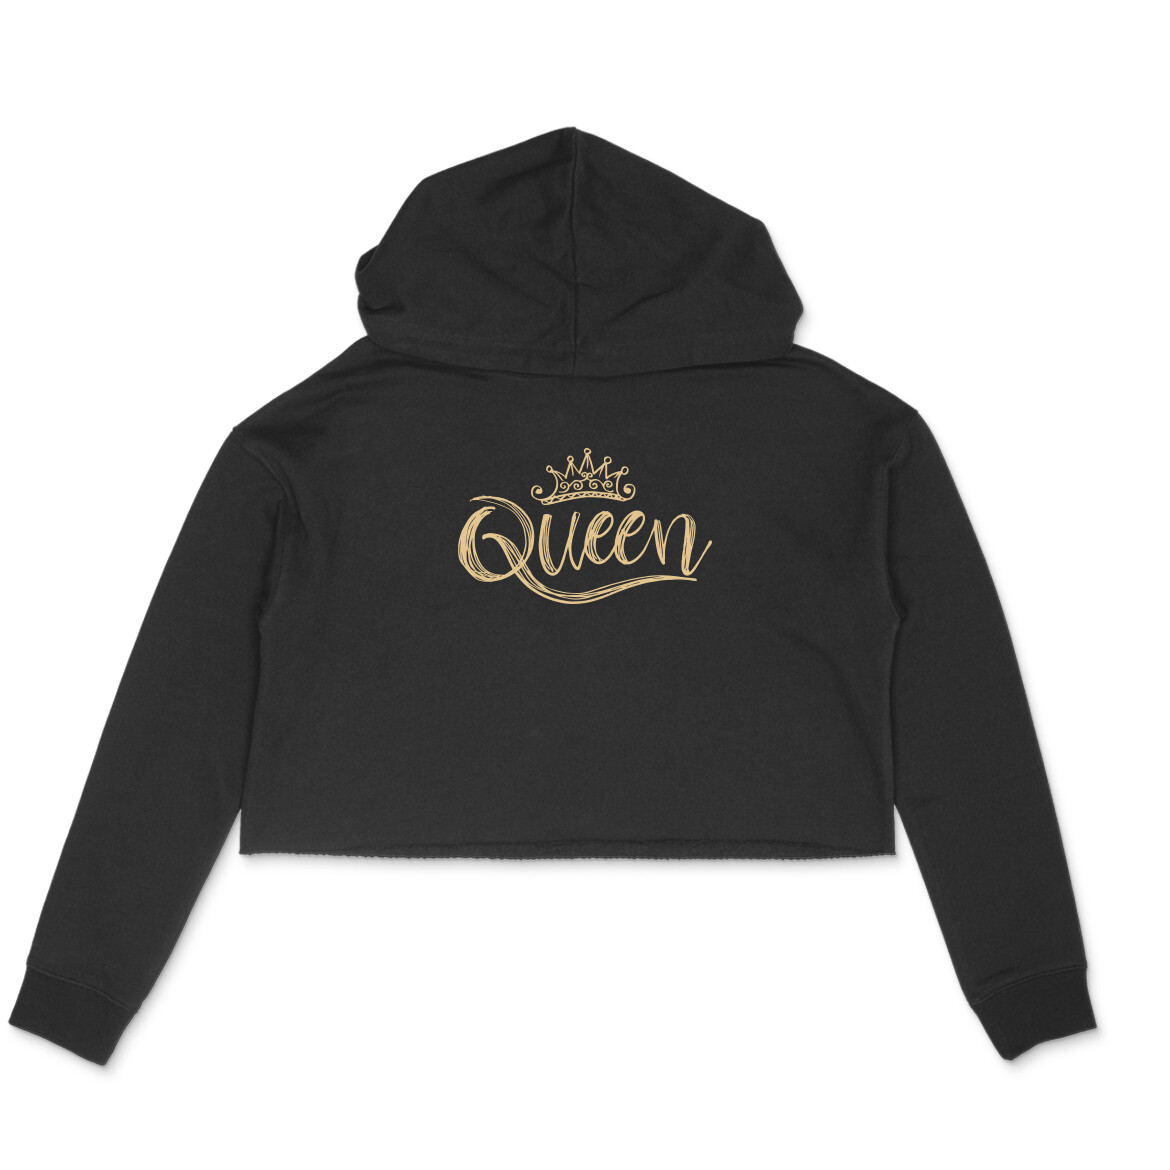 Queen hoodie